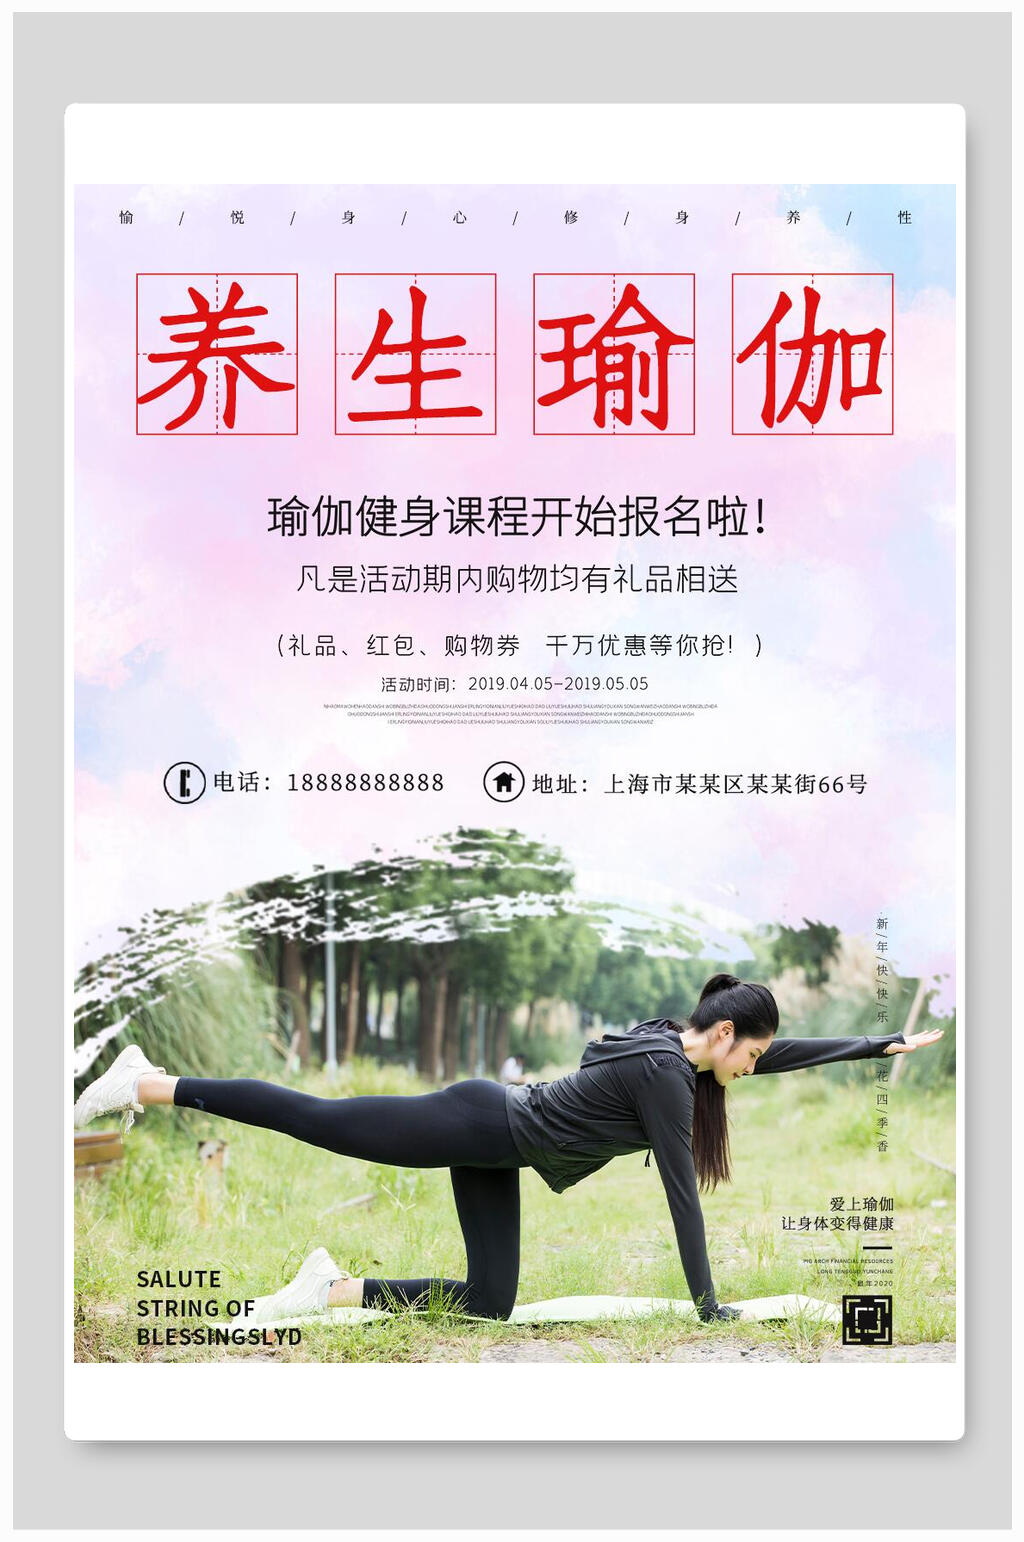 瑜伽运动健身海报设计立即下载高端简约瑜伽健身运动海报设计立即下载